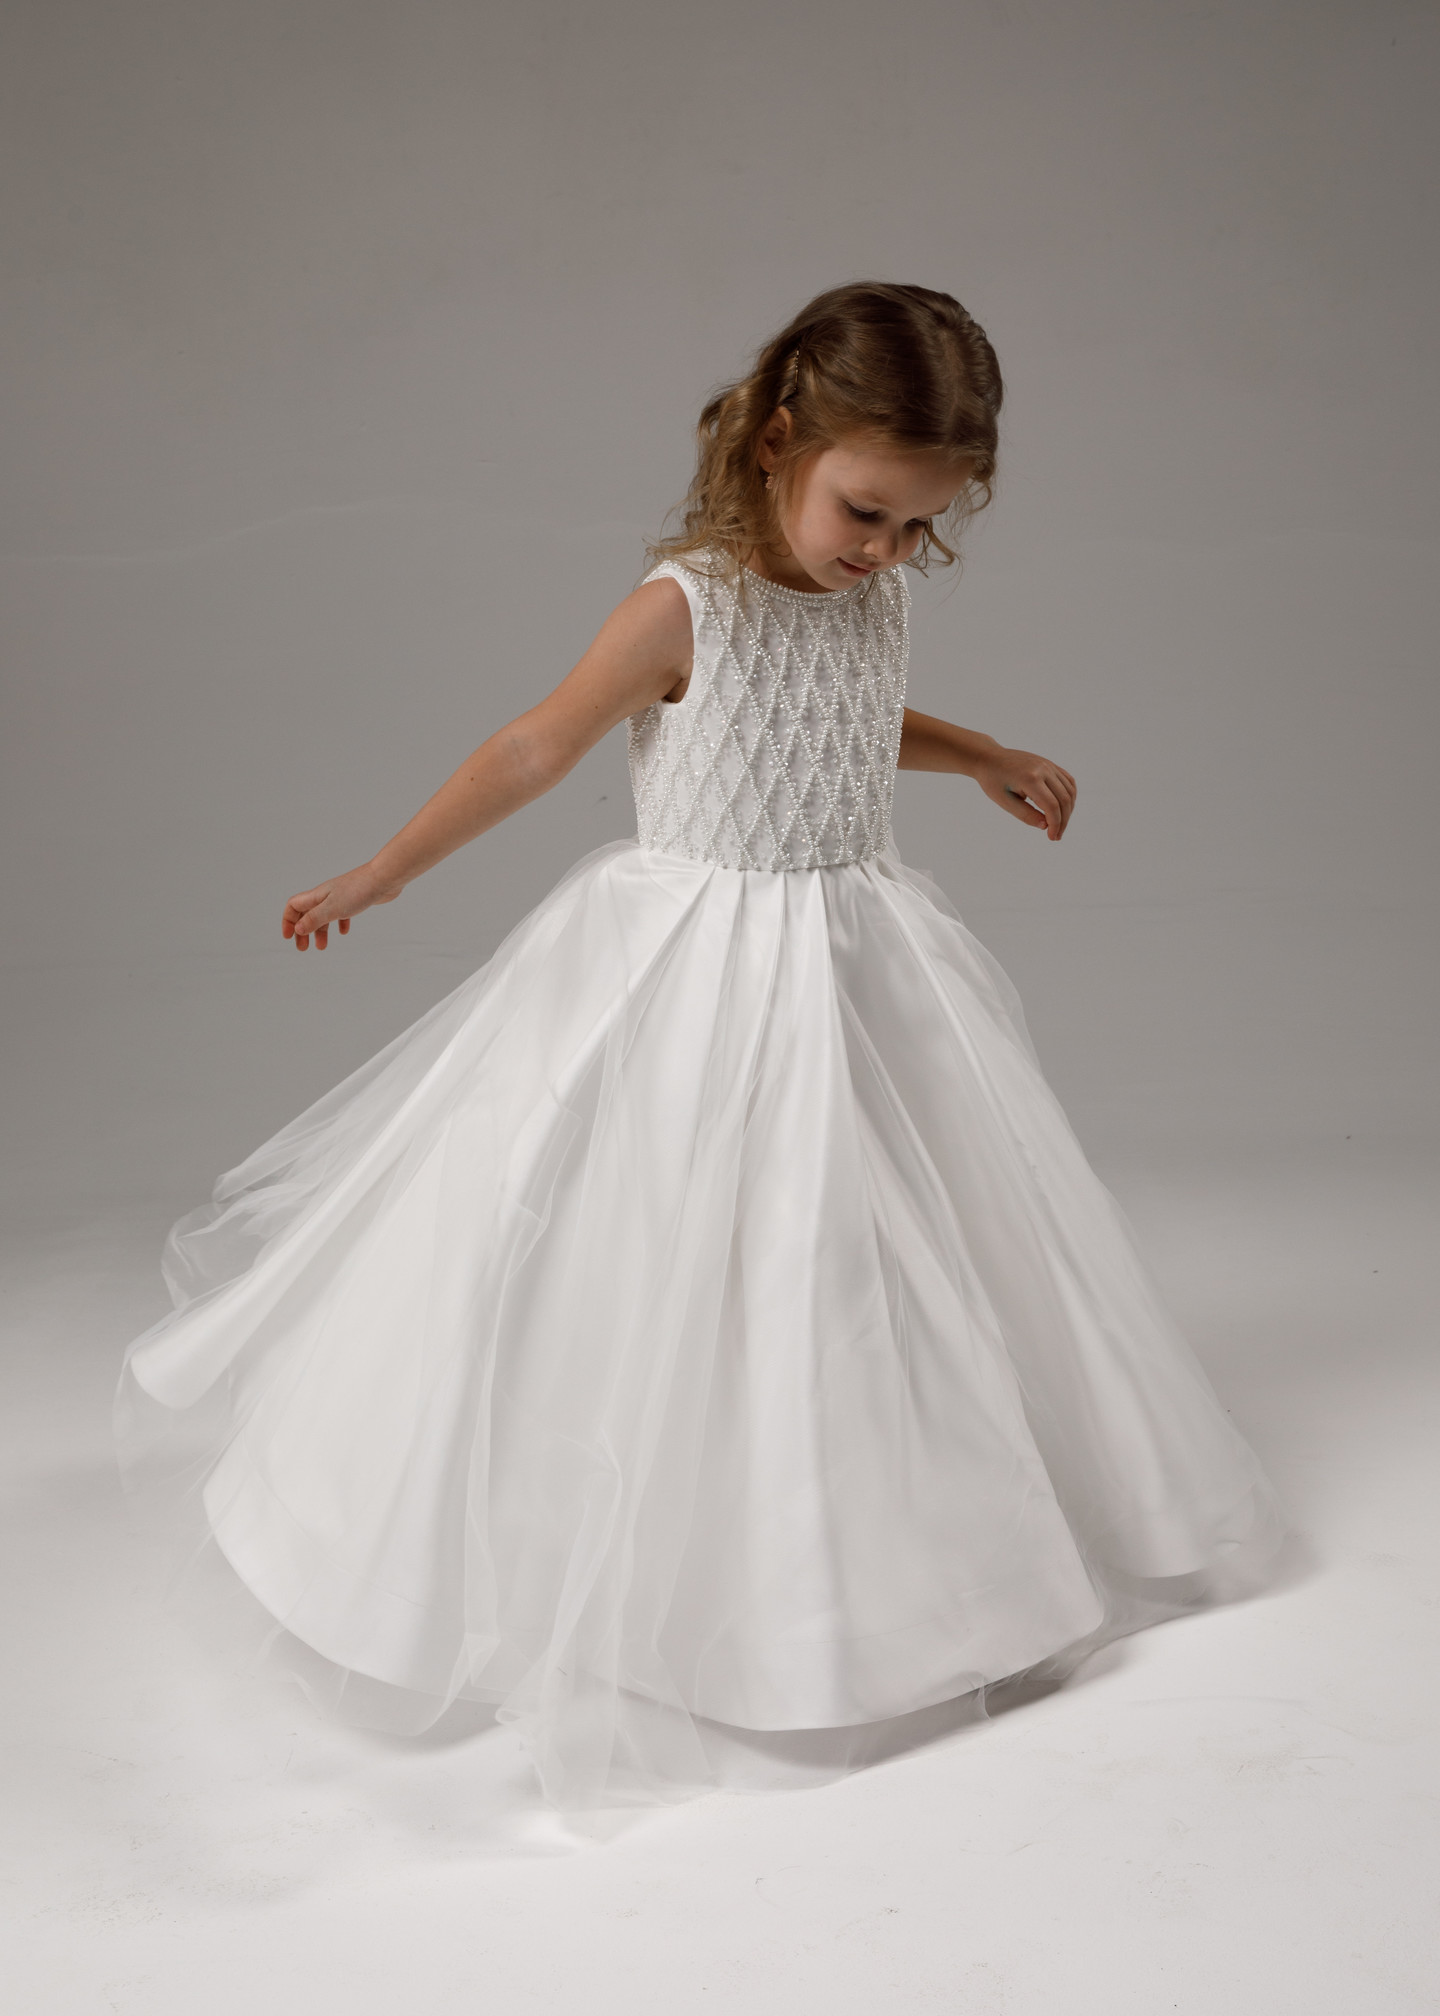 Детское платье с вышивкой, 2021, одежда, детское платье, детское, молочно-белый, атлас, вышивка, flower girl